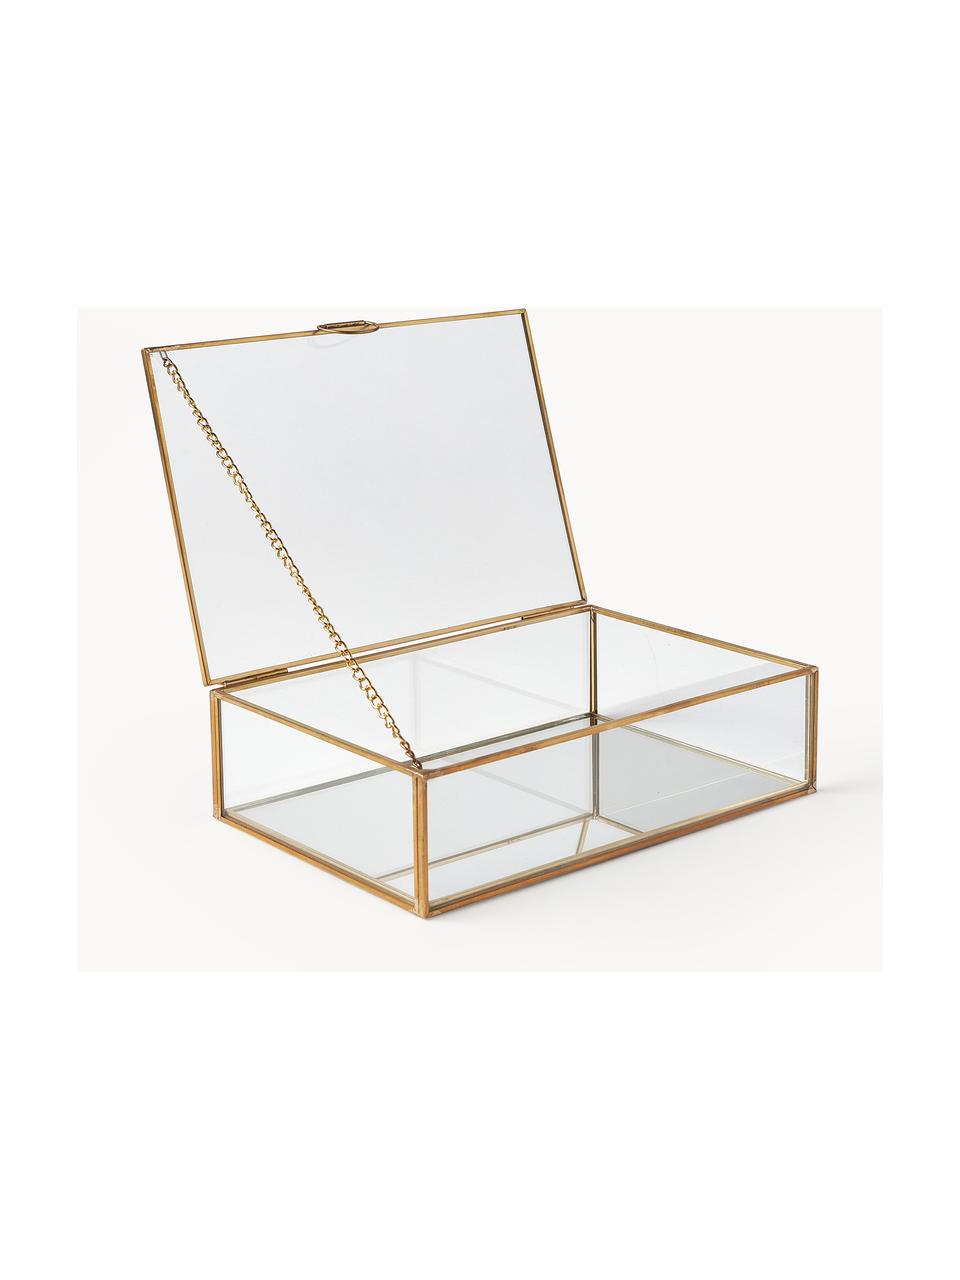 Aufbewahrungsbox Lirio aus Glas, Rahmen: Metall, beschichtet, Transparent, Goldfarben, B 20 x T 14 cm